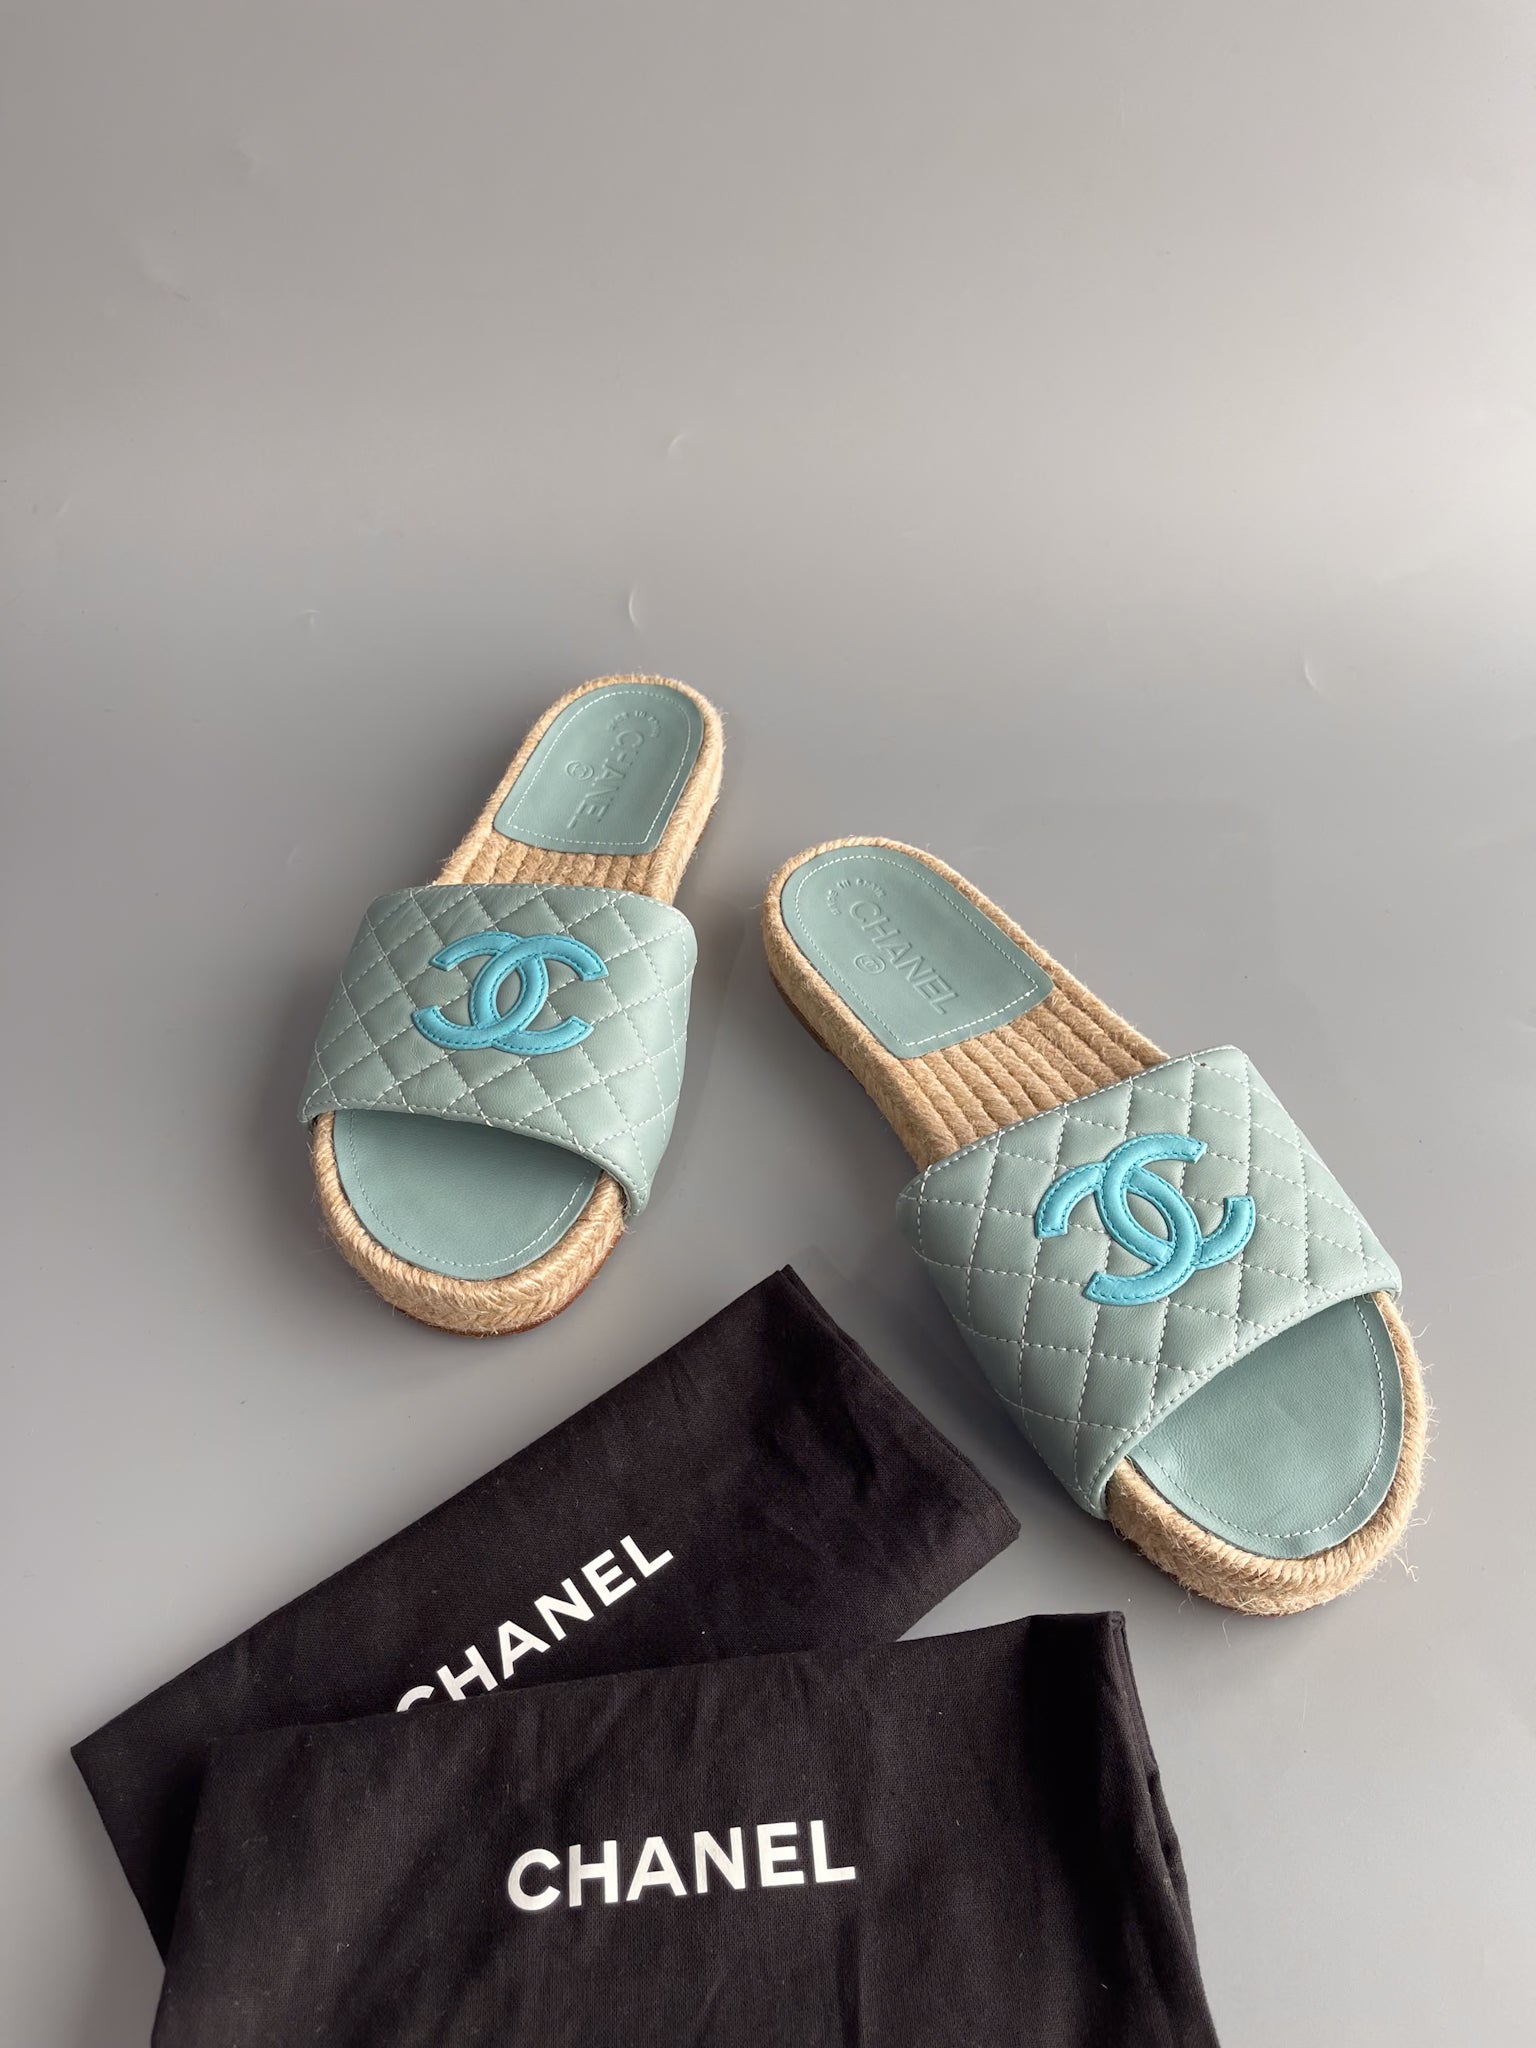 Chanel Espadrilles slides in Turquoise size 40 EU | Purse Maison Luxury Bags Shop